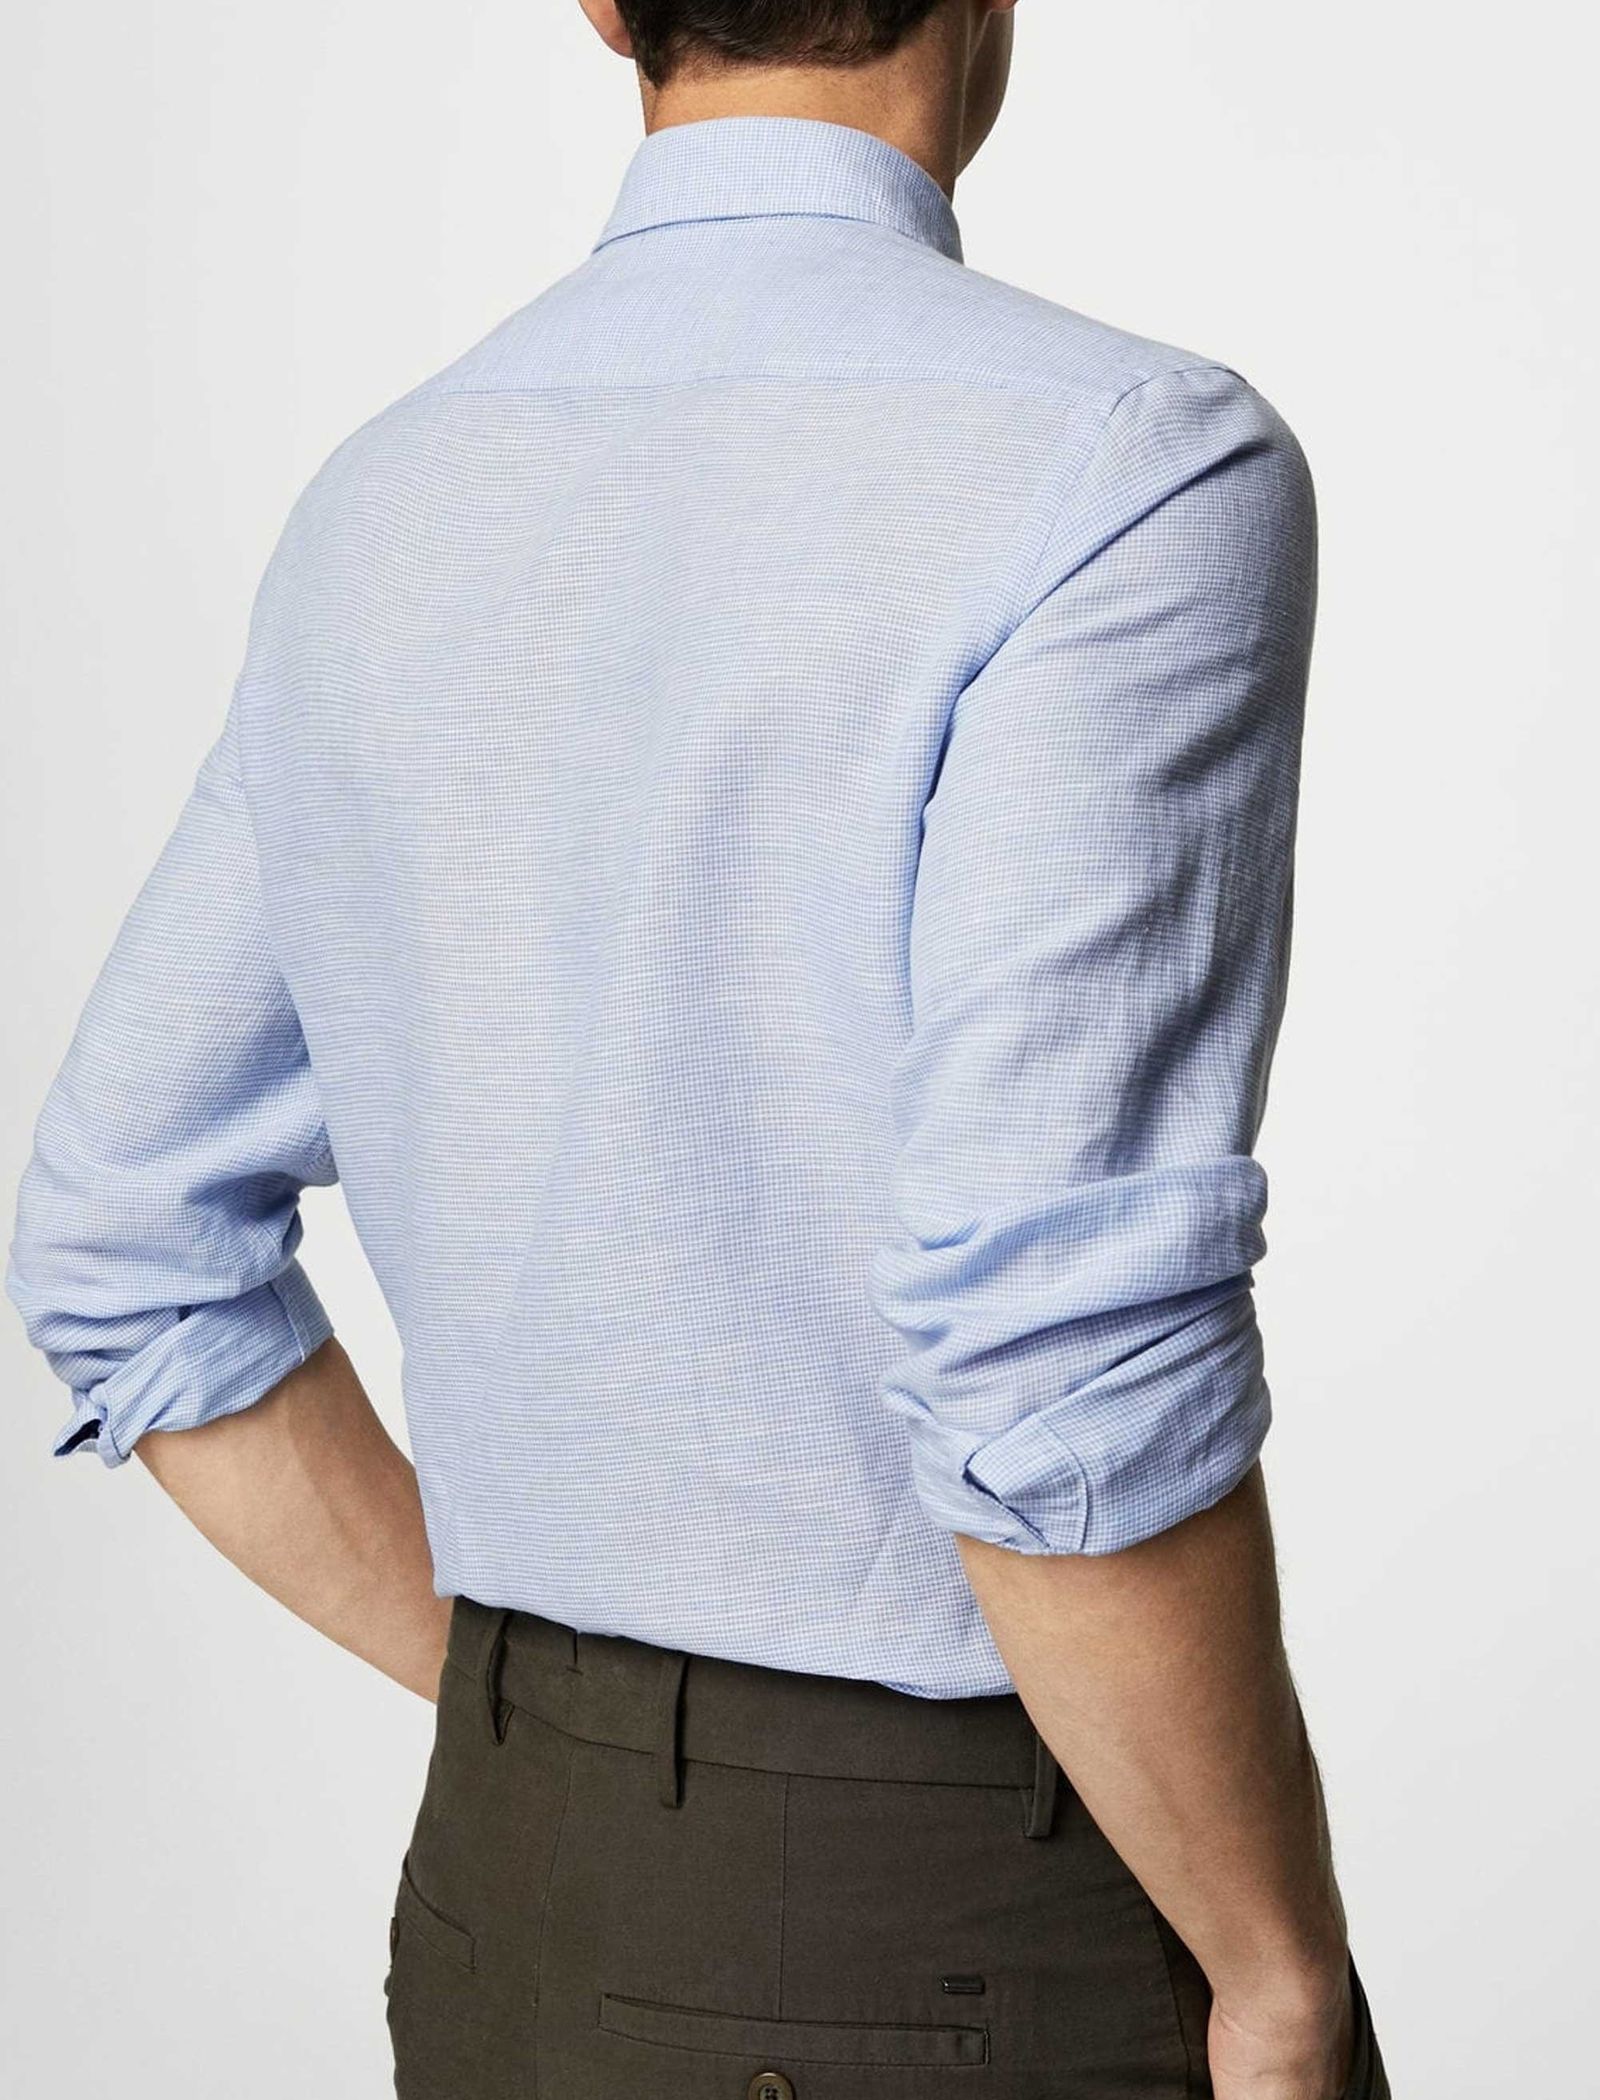 پیراهن آستین بلند مردانه - مانگو - آبي - 9